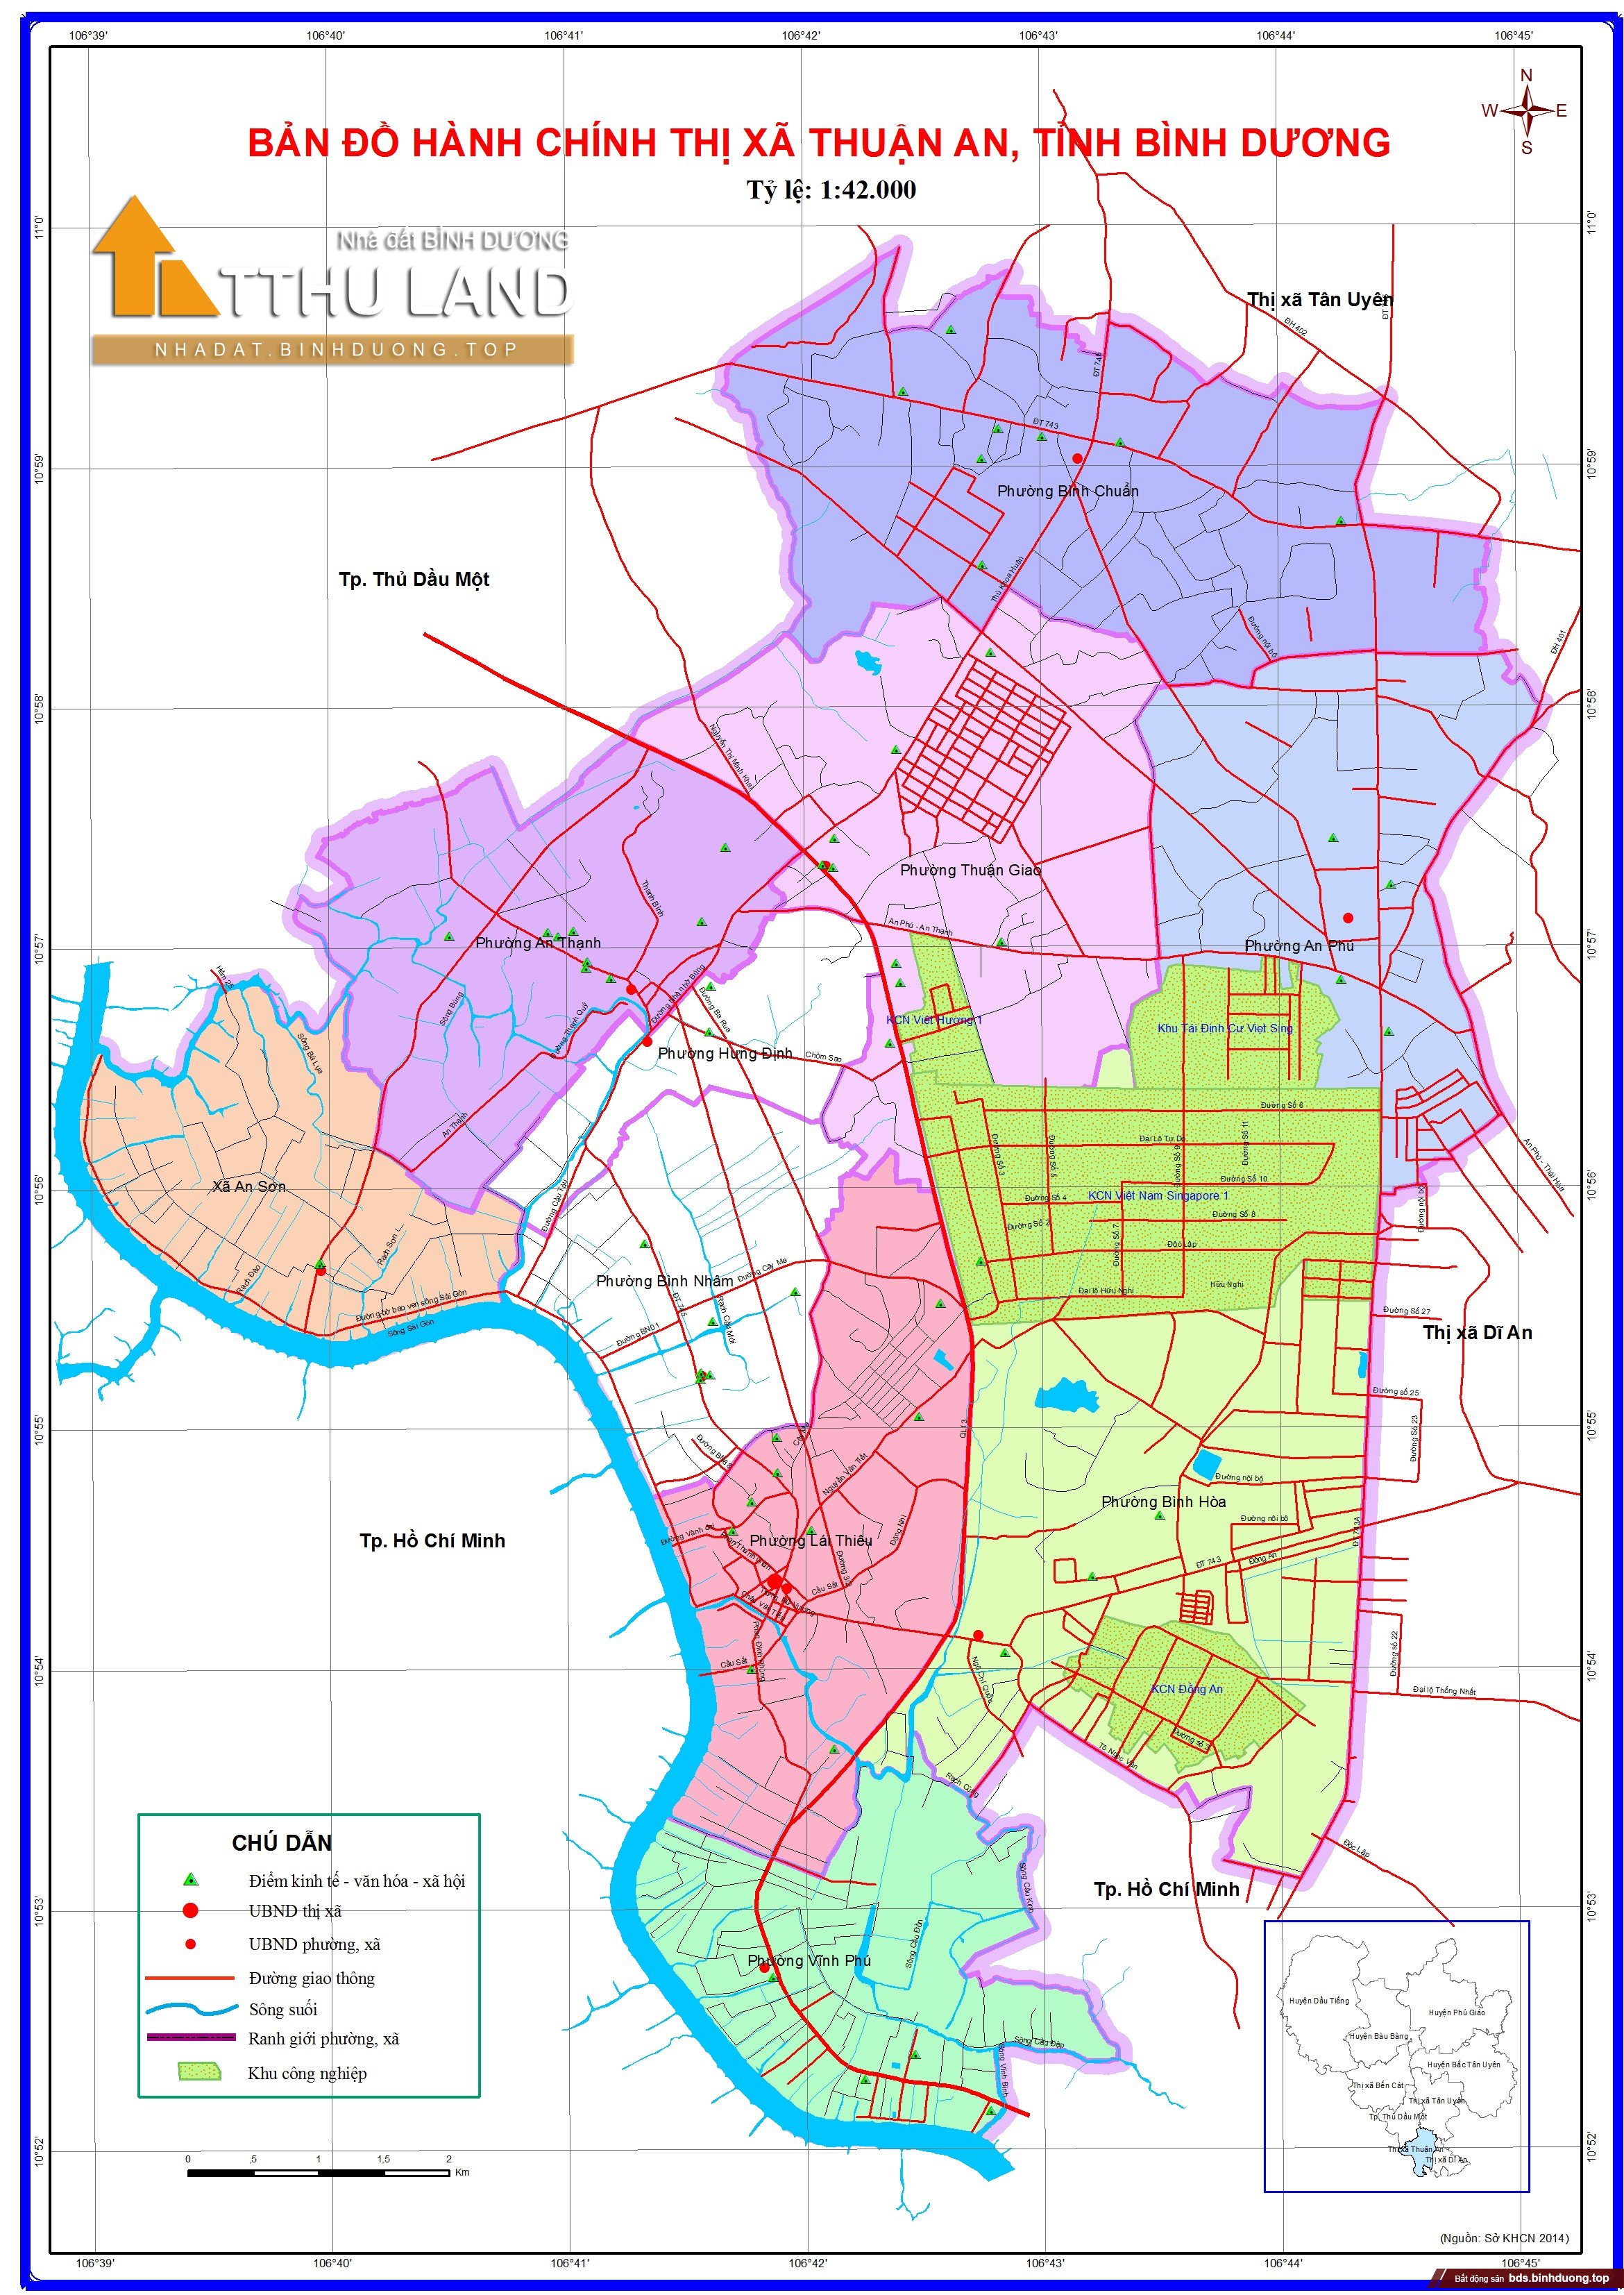 Bản đồ hành chính thành phố Thuận An: Thuận An là một trong những thành phố hấp dẫn để đến thăm. Bản đồ hành chính thành phố Thuận An giúp du khách tìm hiểu thông tin chi tiết về vị trí các điểm đến, các dịch vụ du lịch và giải trí tại đây. Hãy đến và tận hưởng chuyến đi tuyệt vời tại Thuận An.